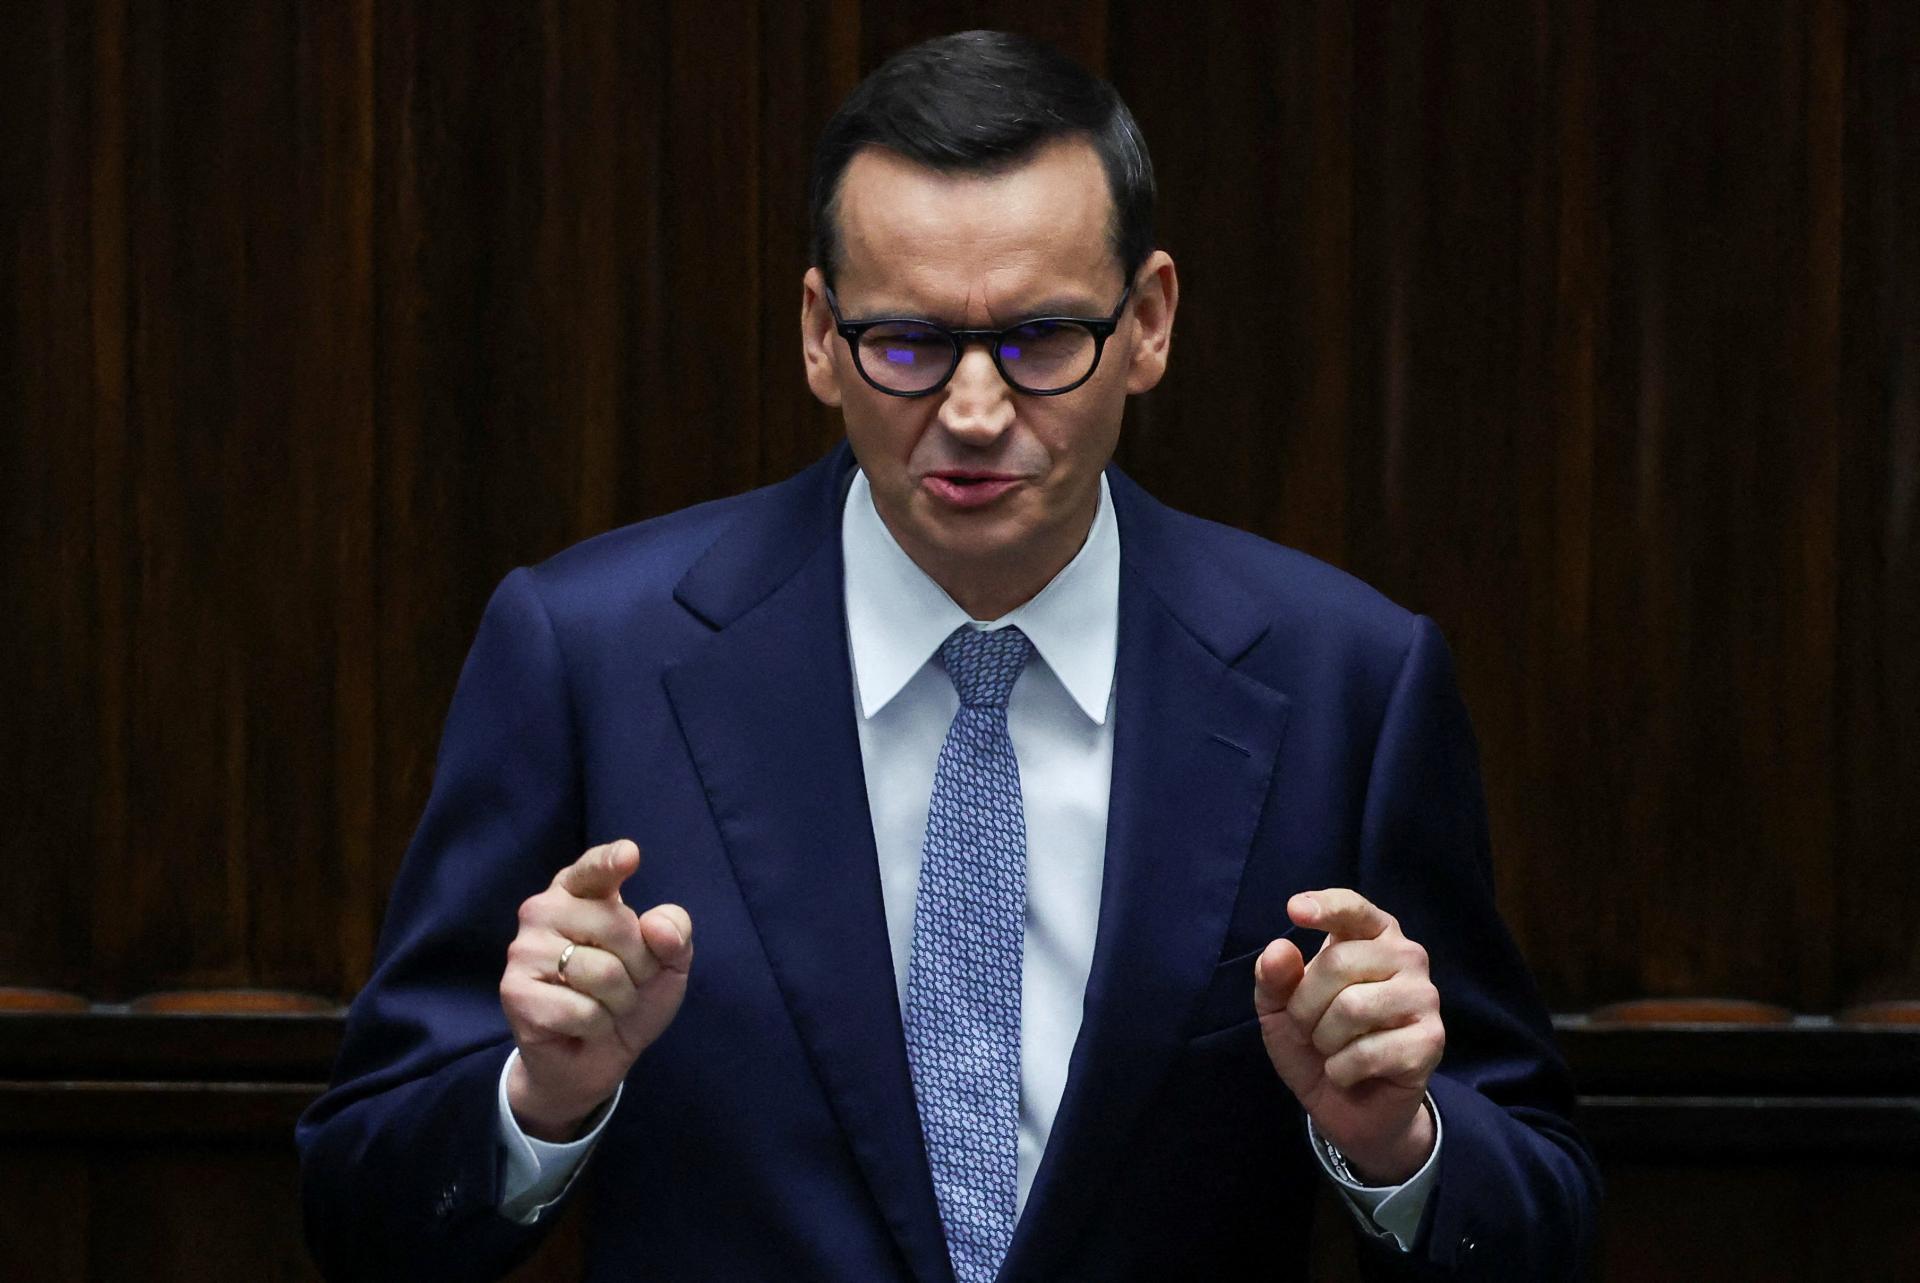 Táto fraška nie je potrebná. Poľské opozičné strany odmietli rokovať s premiérom Morawieckým o koalícii